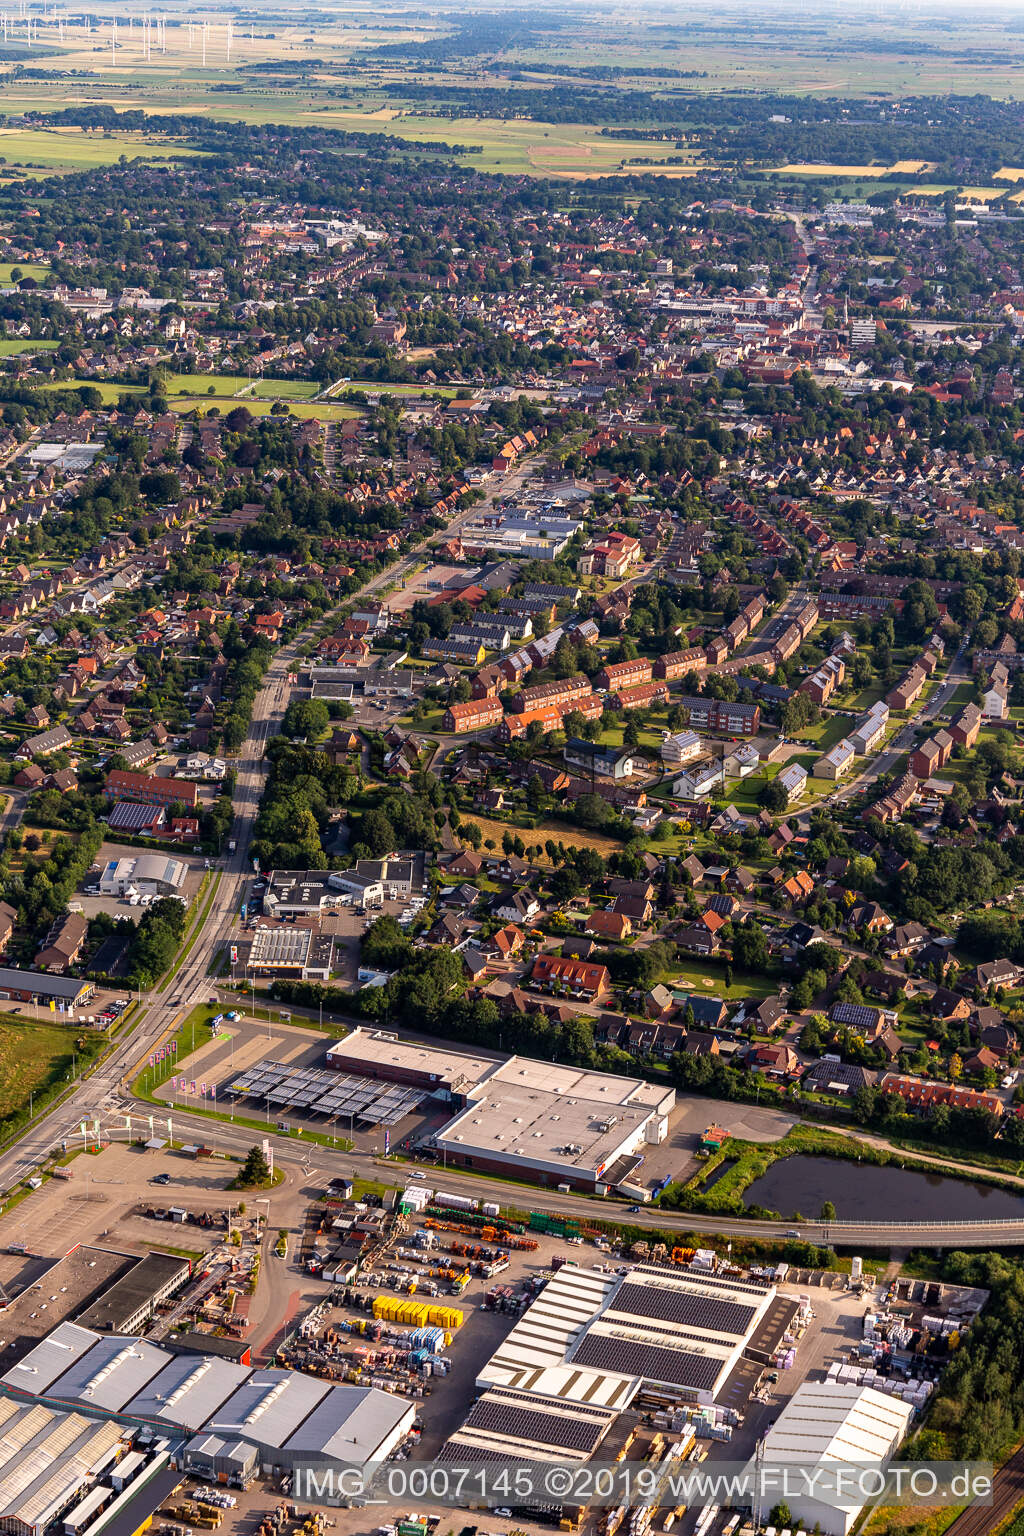 Luftbild von Stadtansicht des Innenstadtbereiches in Heide im Bundesland Schleswig-Holstein, Deutschland